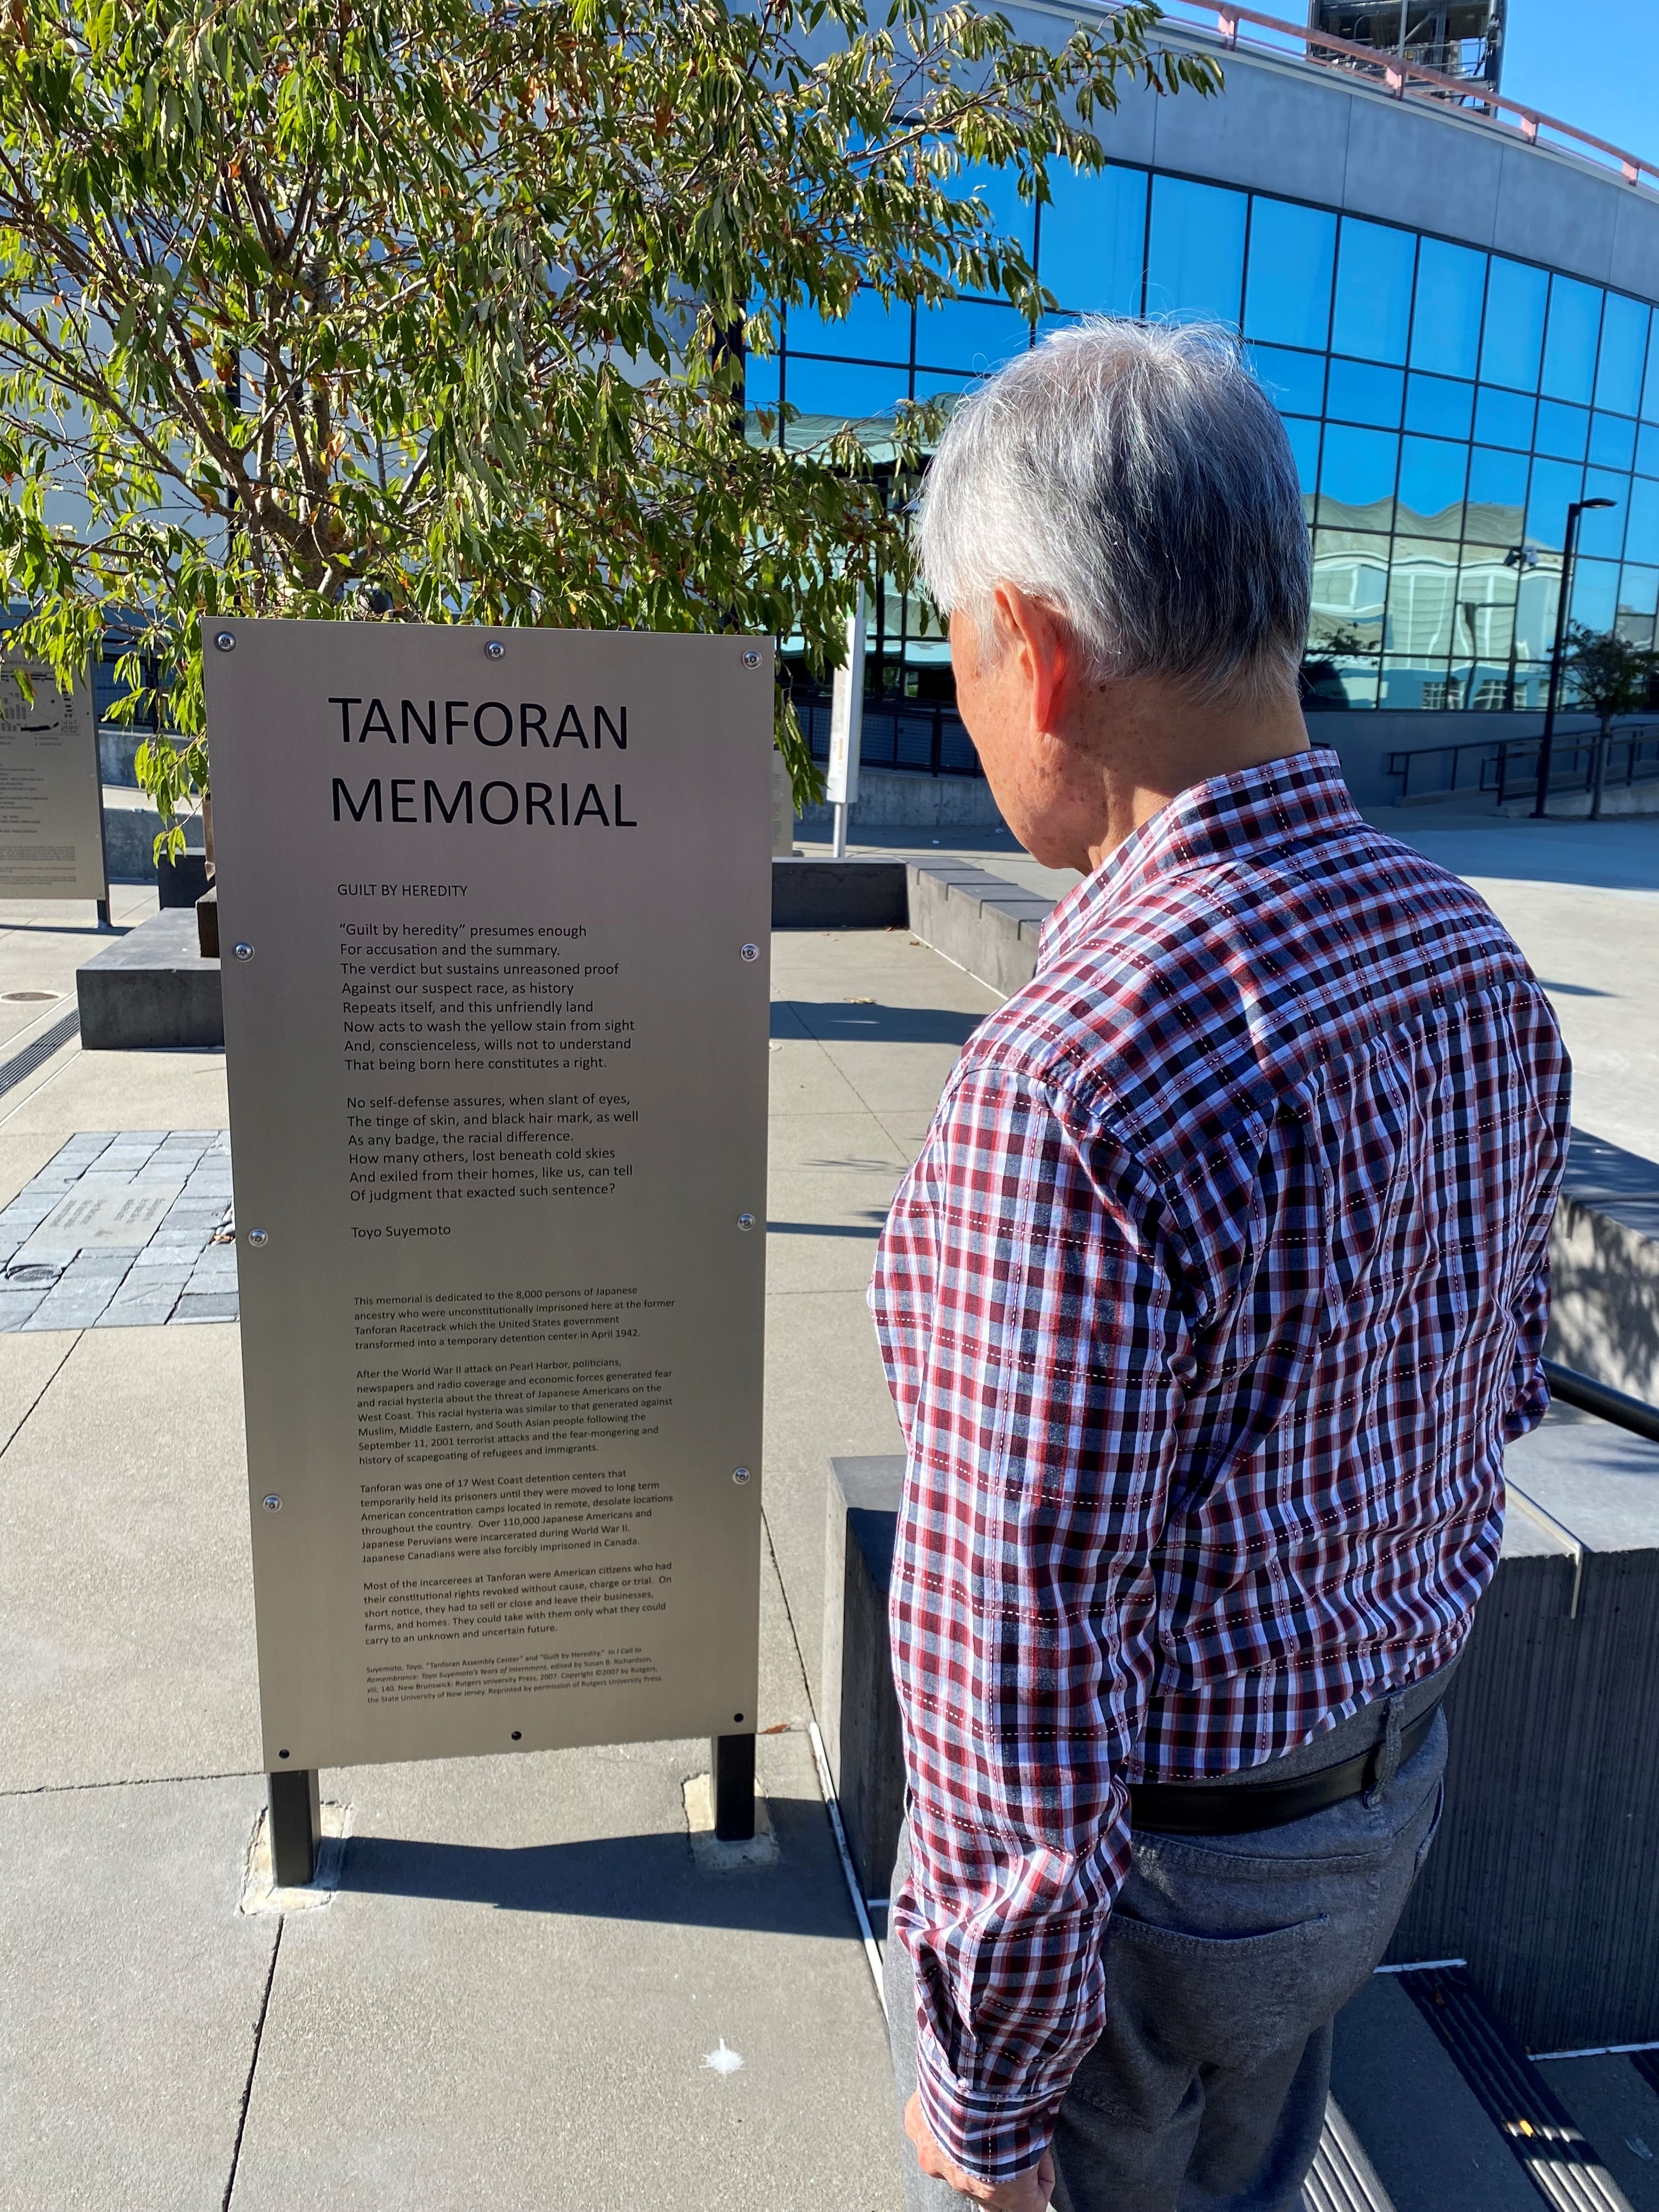 George Takei looking at metal sign describing Tanforan Memorial